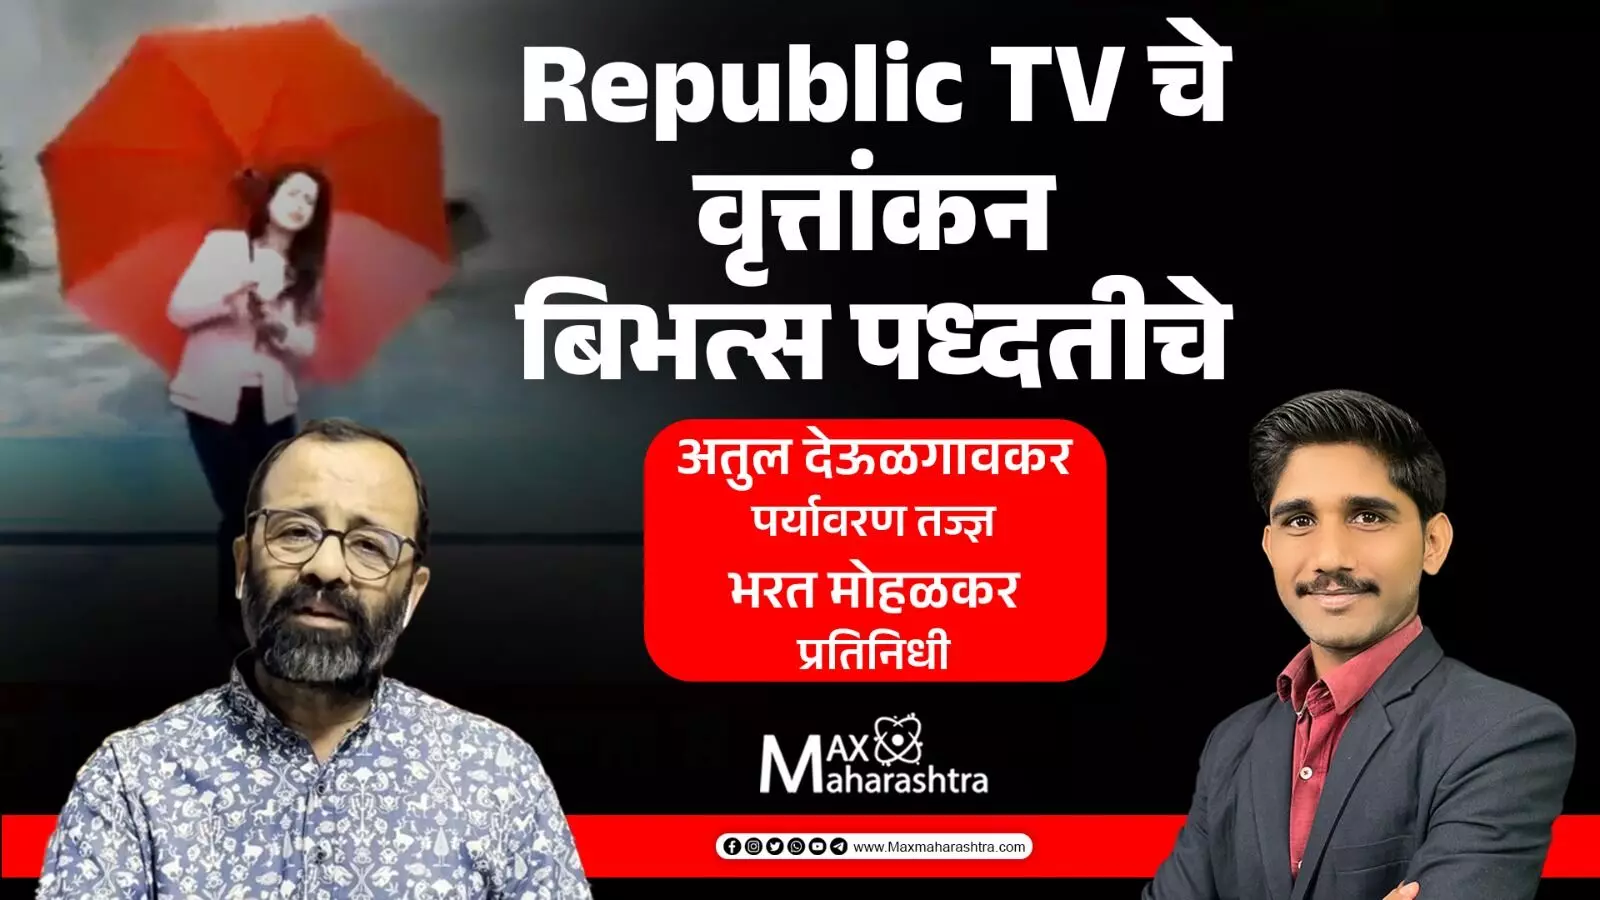 Republic Bharat TV  ने चक्रीवादळाचे केलेले वृत्तांकन आपत्ती व्यवस्थापन कायद्याचा भंग करणारे-अतुल देऊळगावकर